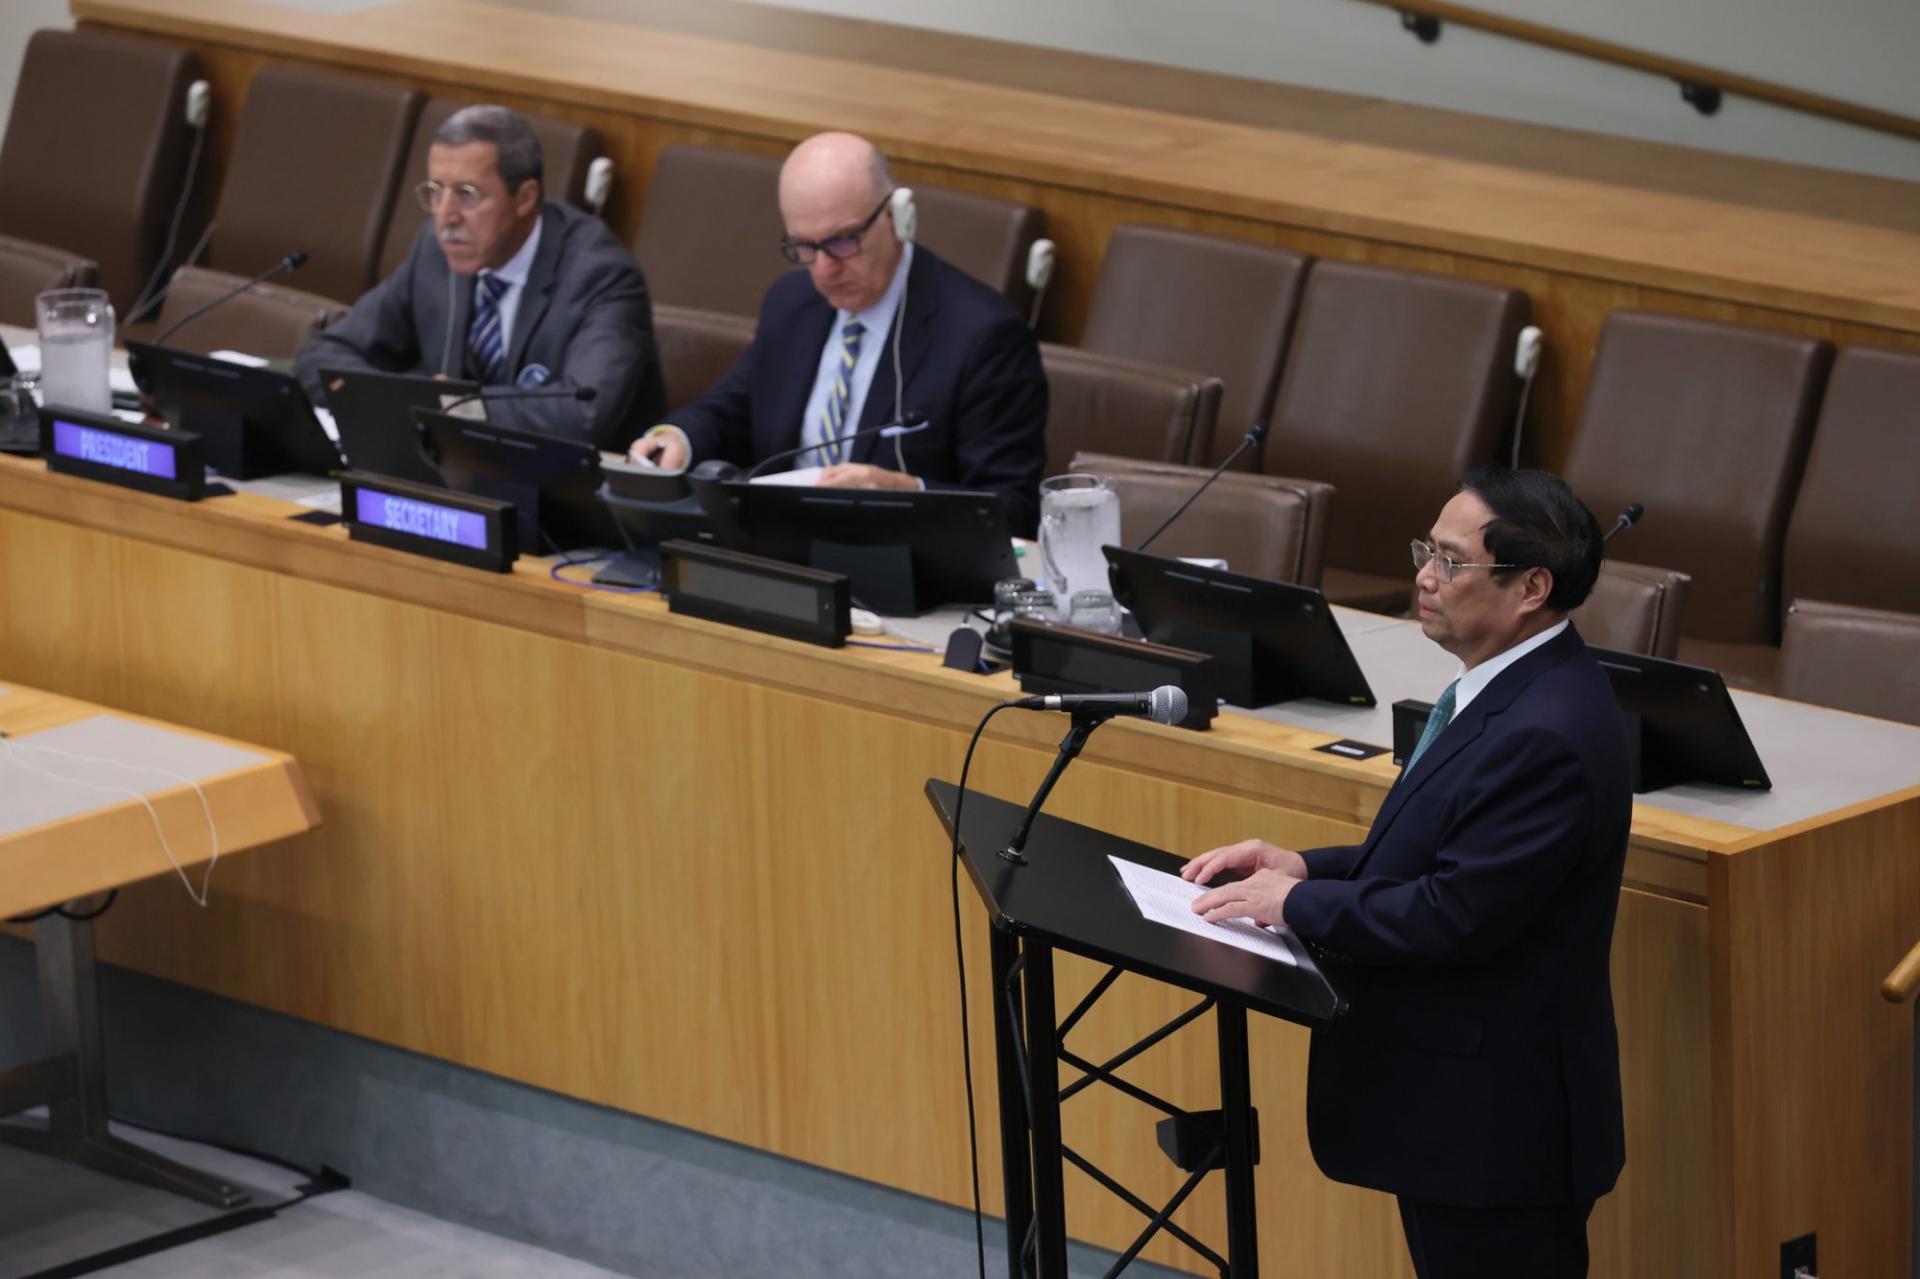 Thủ tướng Chính phủ Phạm Minh Chính nhấn mạnh những hậu quả hết sức nặng nề của đại dịch và kêu gọi cộng đồng quốc tế nỗ lực hành động để thế hệ tương lai không phải chịu thảm họa đại dịch, có cách tiếp cận và các giải pháp mang tính toàn cầu và toàn dân